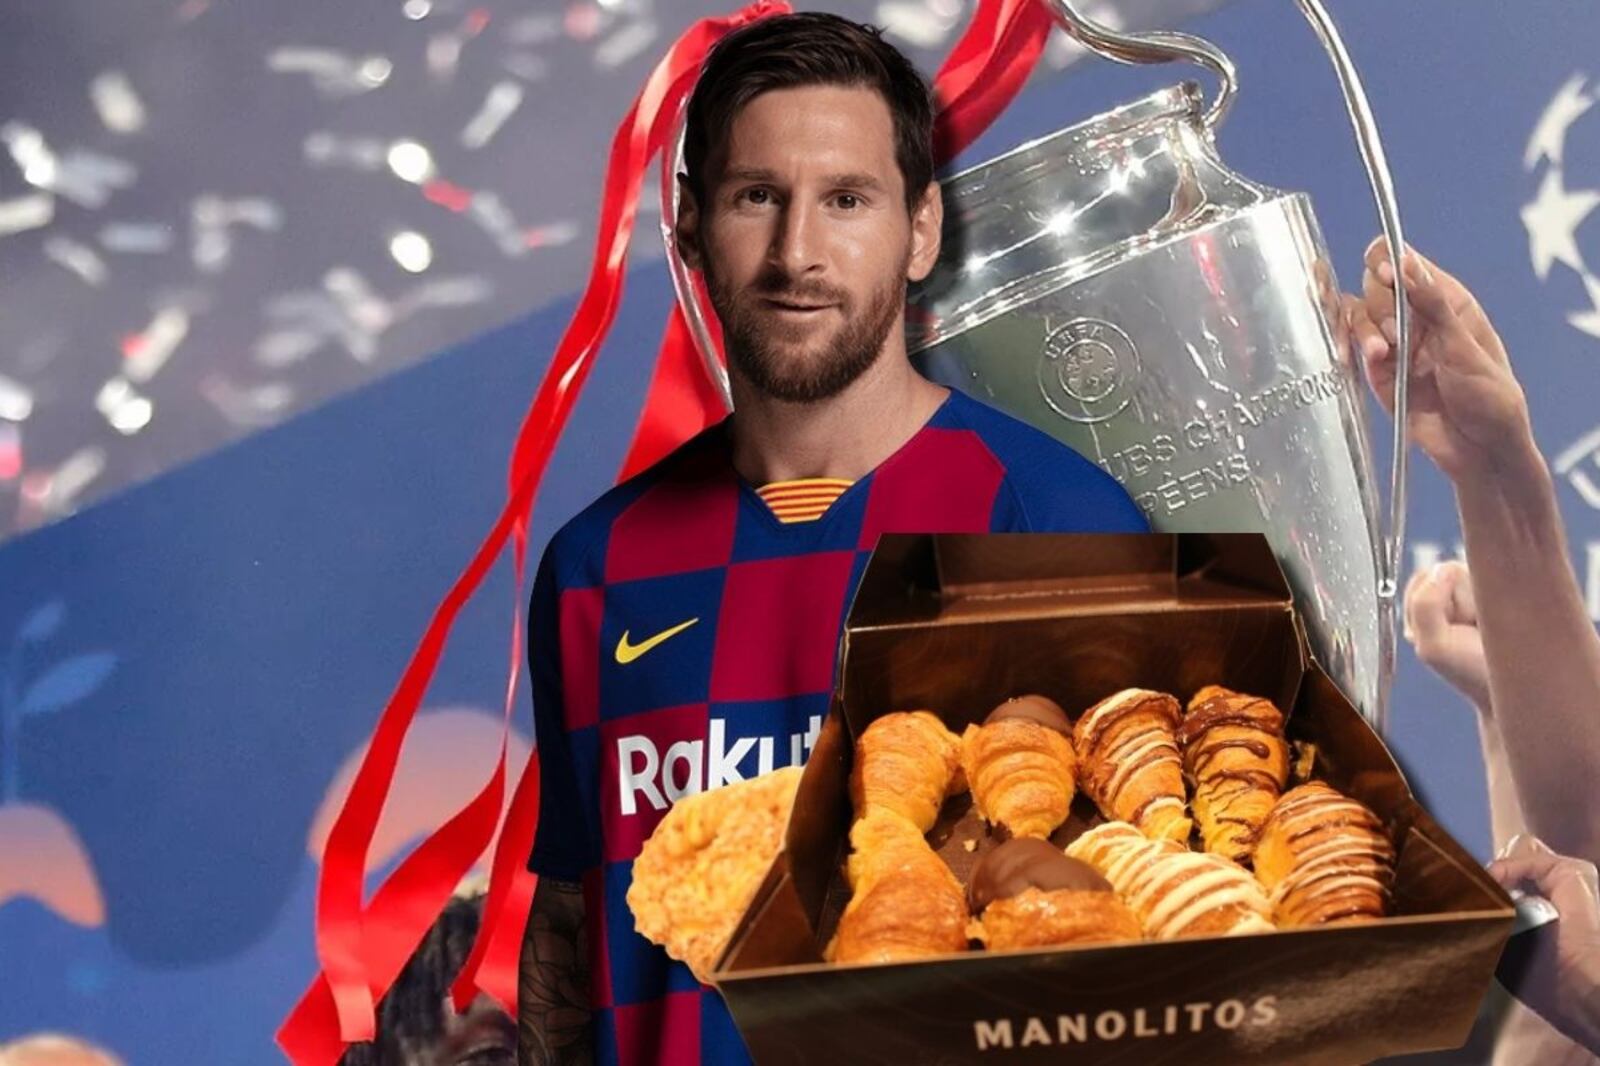 Jugó con Messi en el FC Barcelona, ganó la Champions League, hoy vende manolitos